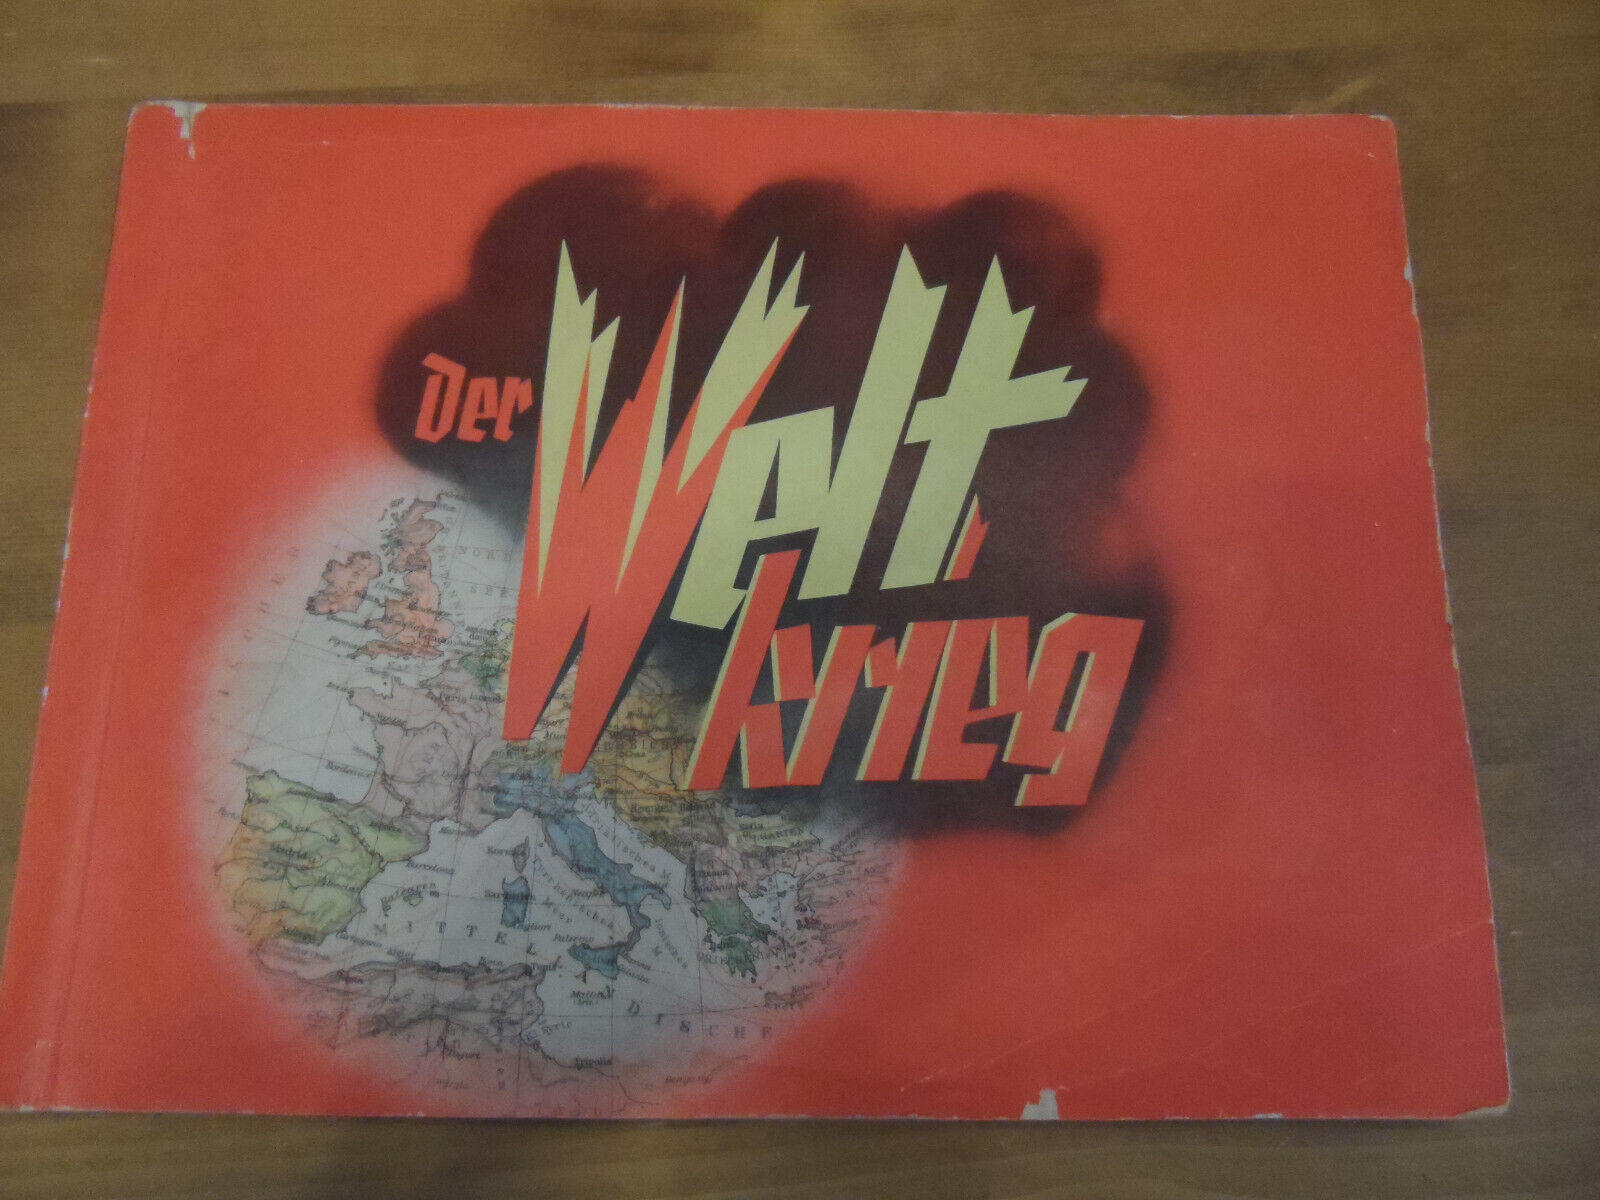 Rare German card album on WW I - Der Weltkrieg - card album complete